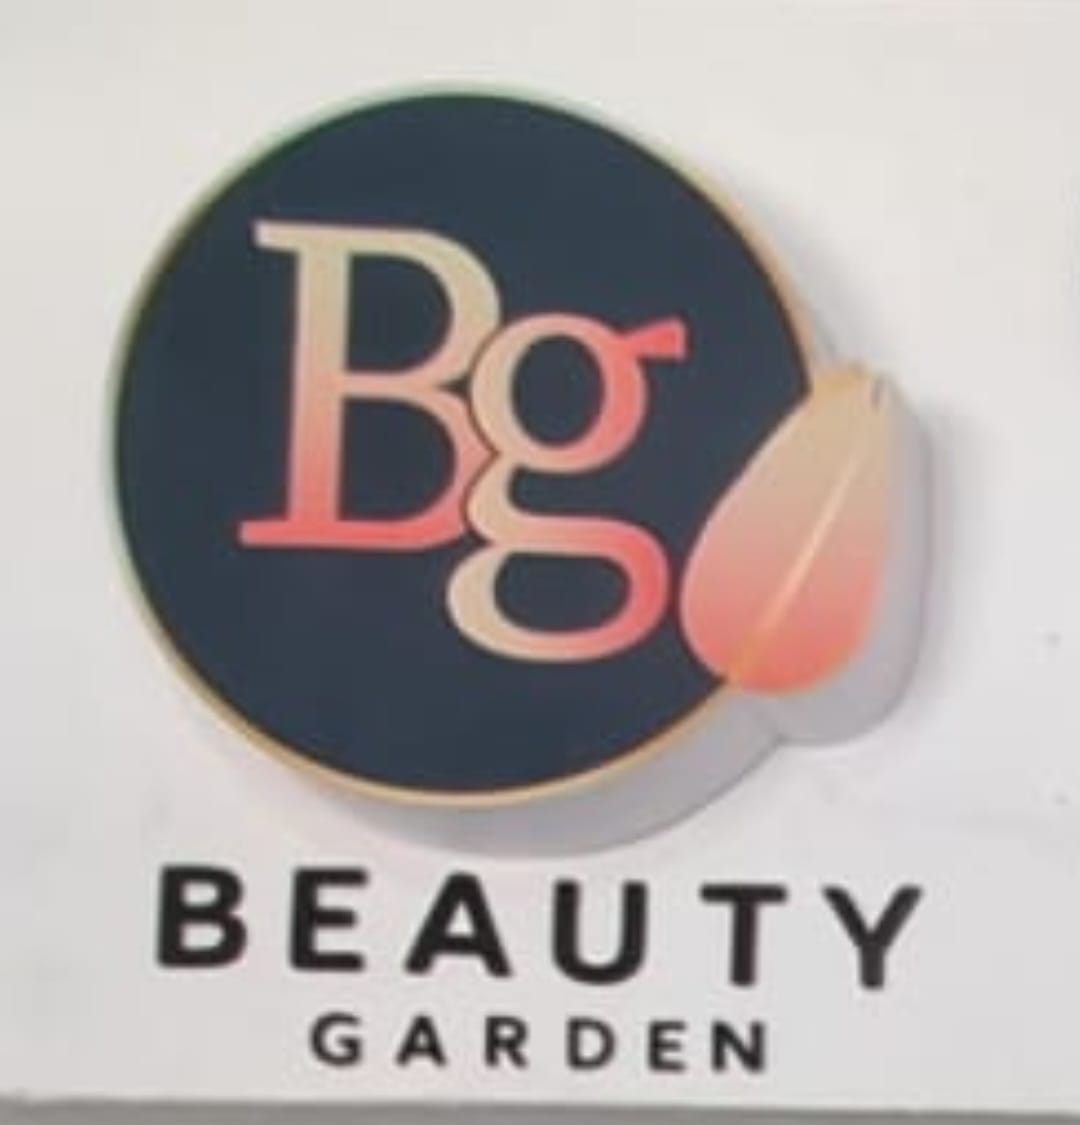 Tienda de belleza beuty garden